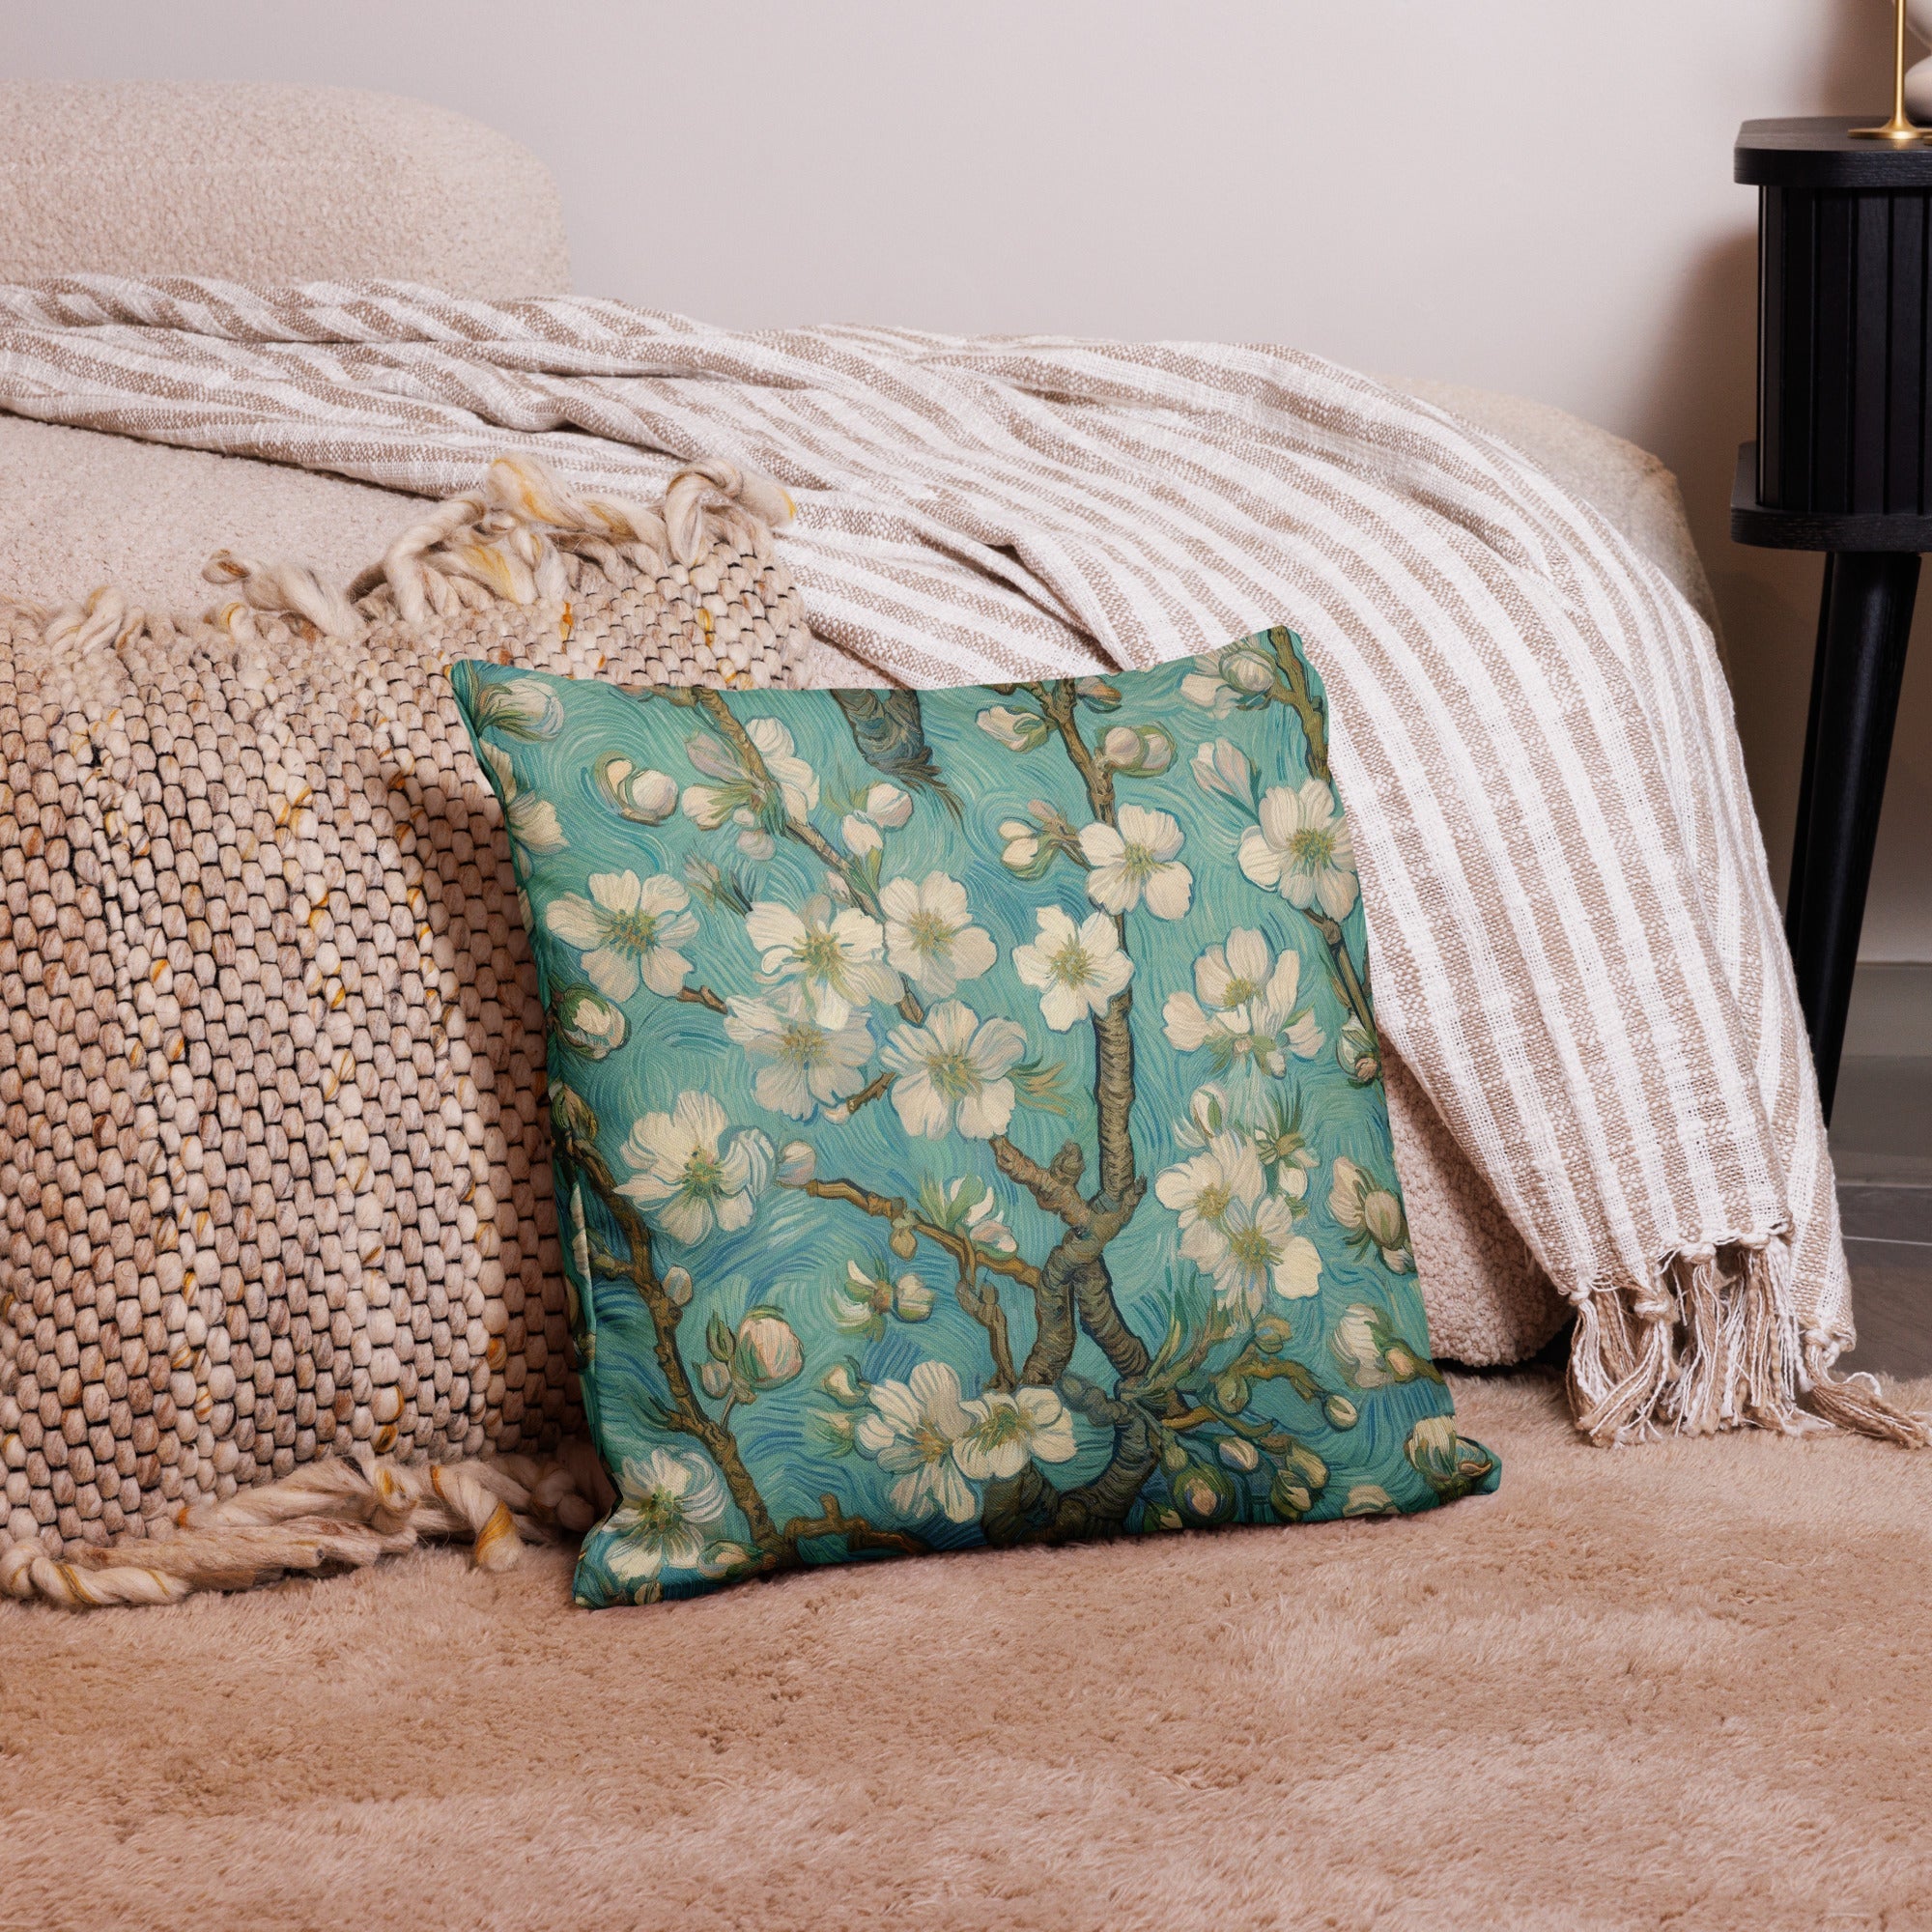 Vincent van Gogh 'Almond Blossom' Famous Painting Premium Pillow | Premium Art Cushion